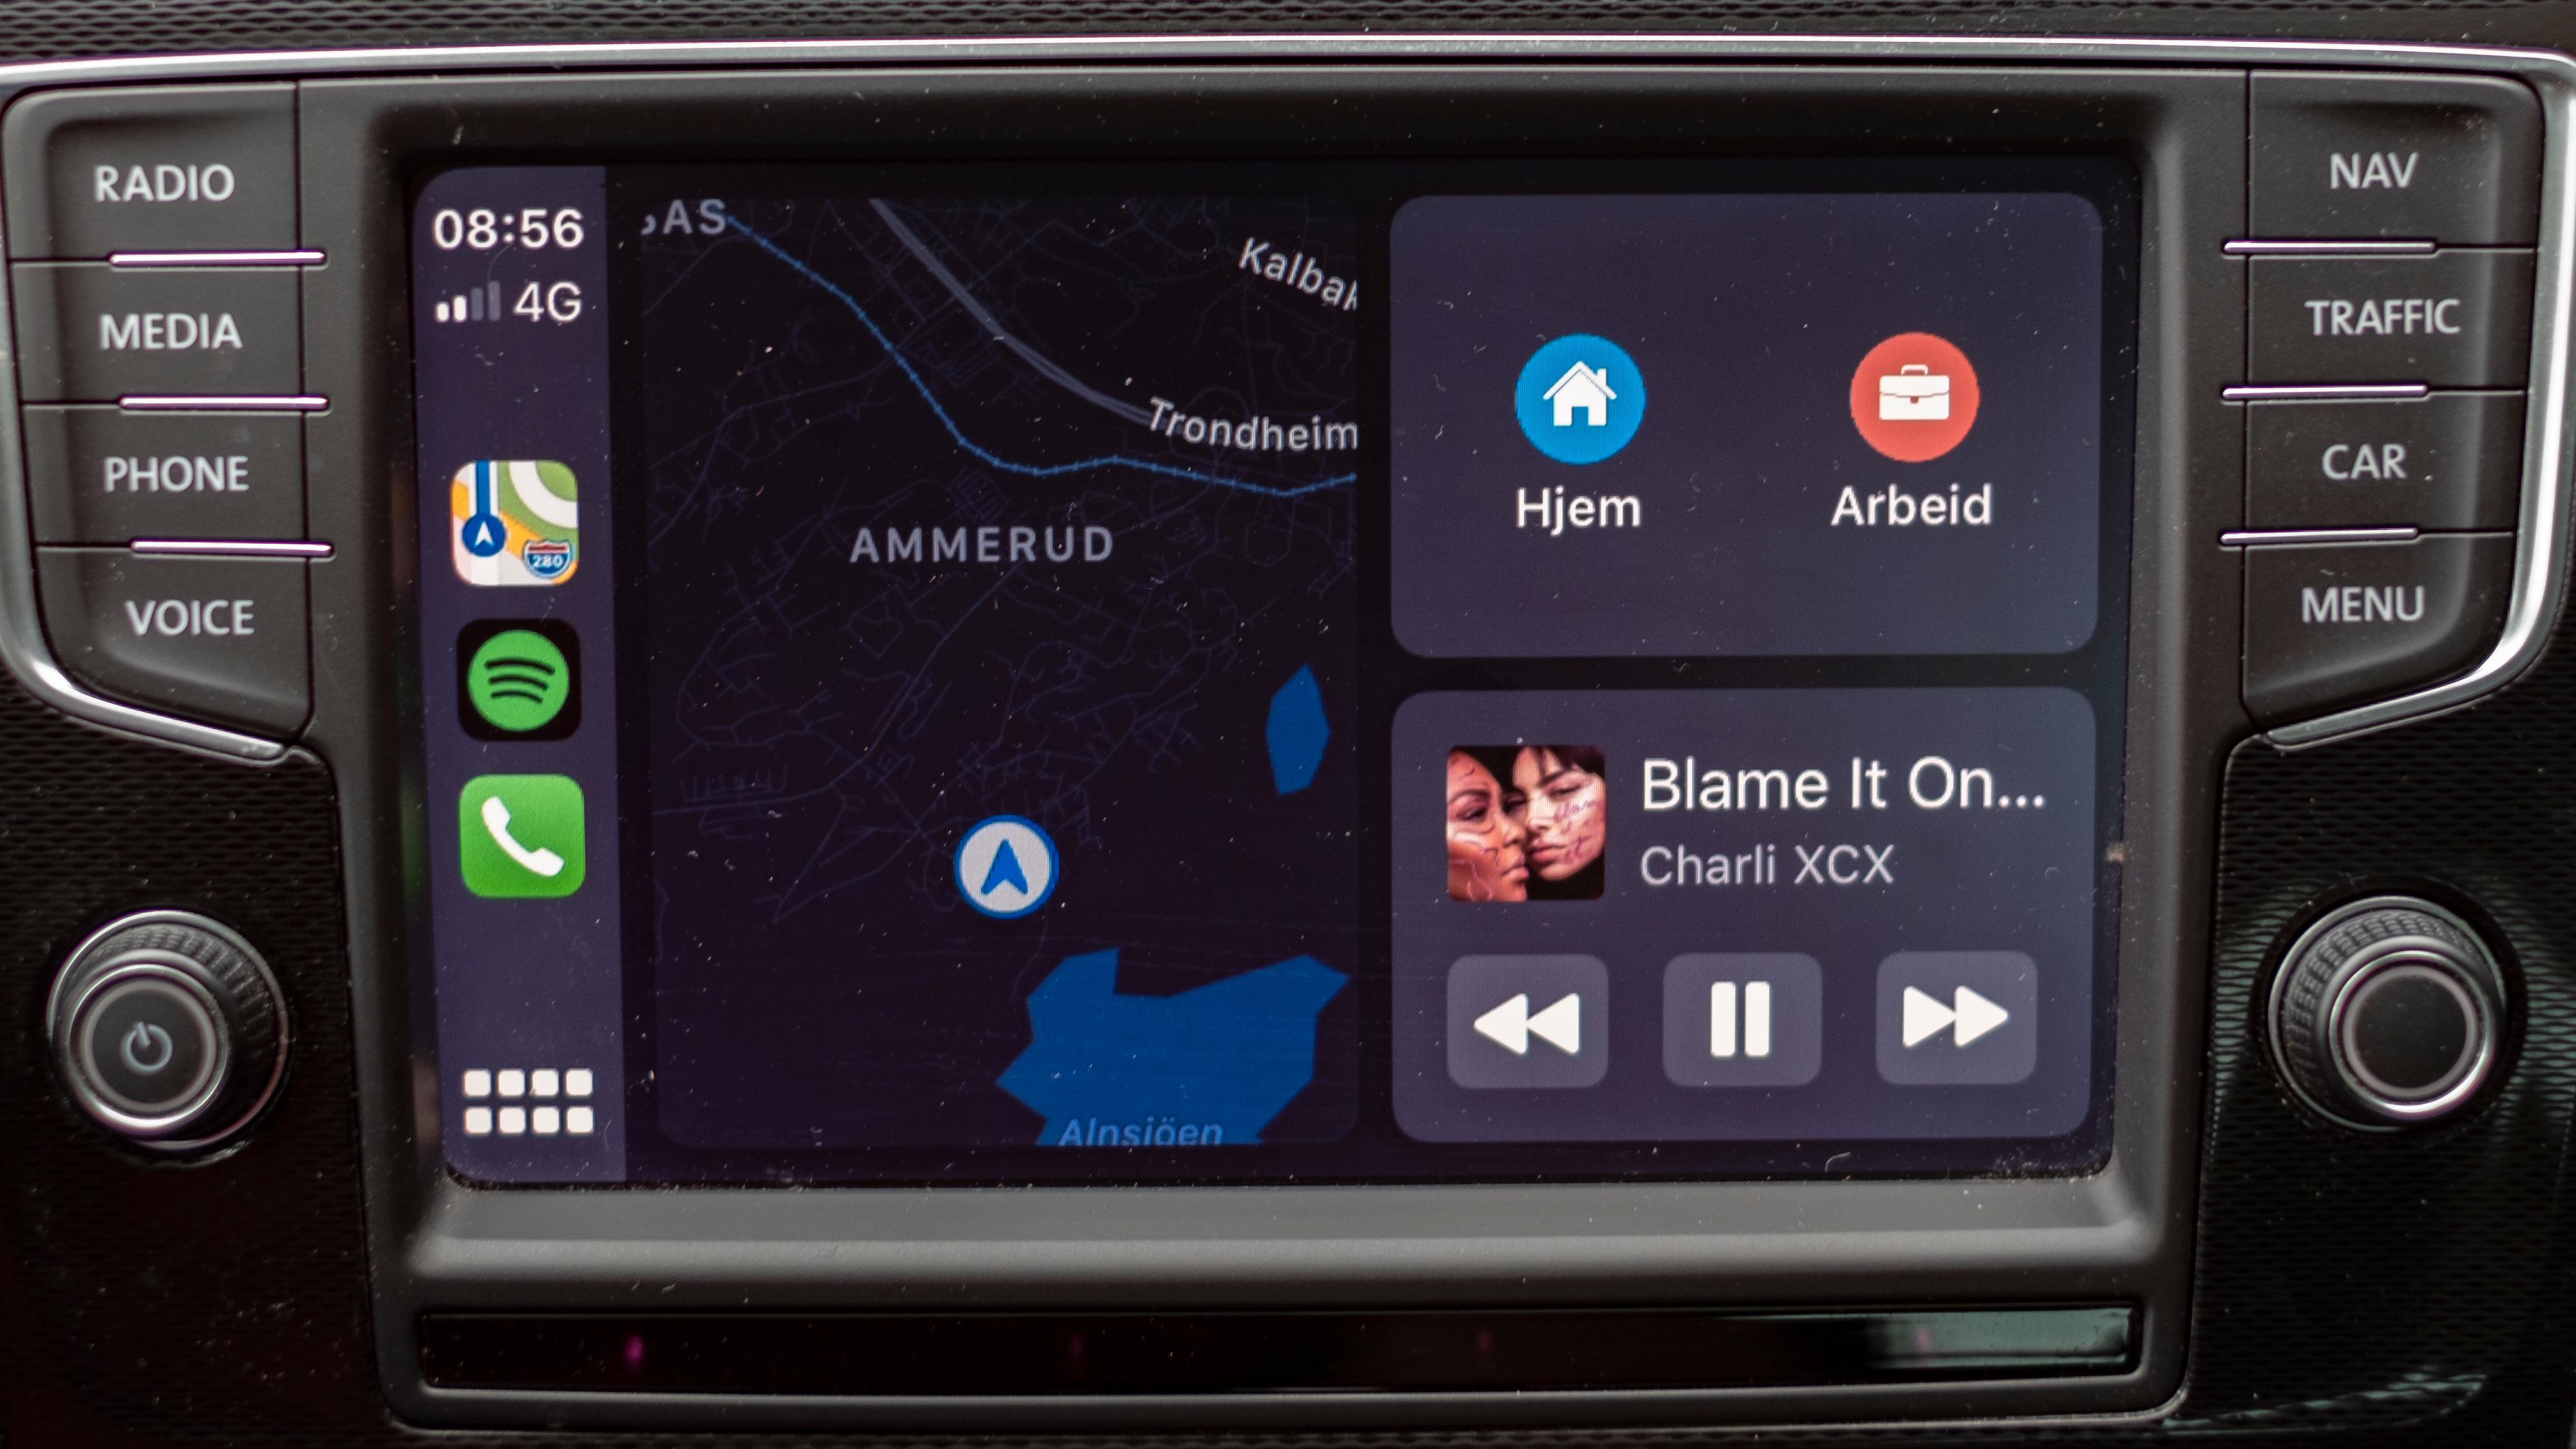 CarPlay har fått en ny standardvisning med hurtigvalg til venstre, kart i midten og utvalgte funksjoner og påminnelser til høyre.